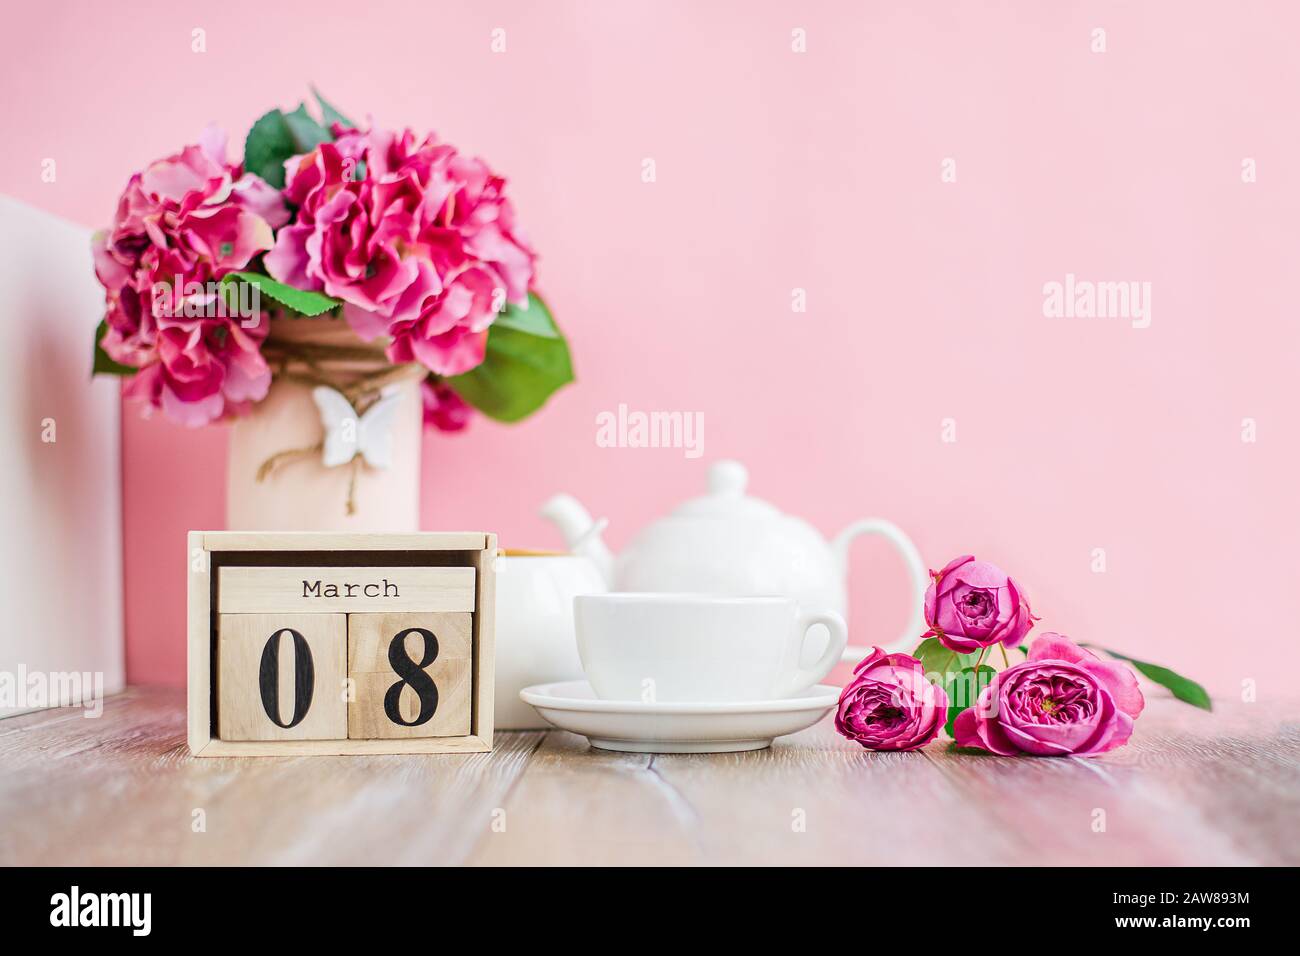 Journée des femmes. Calendrier des arbres du 8 mars, Journée internationale de la femme, décoré de fleurs roses et violettes sur un fond rose. Banque D'Images